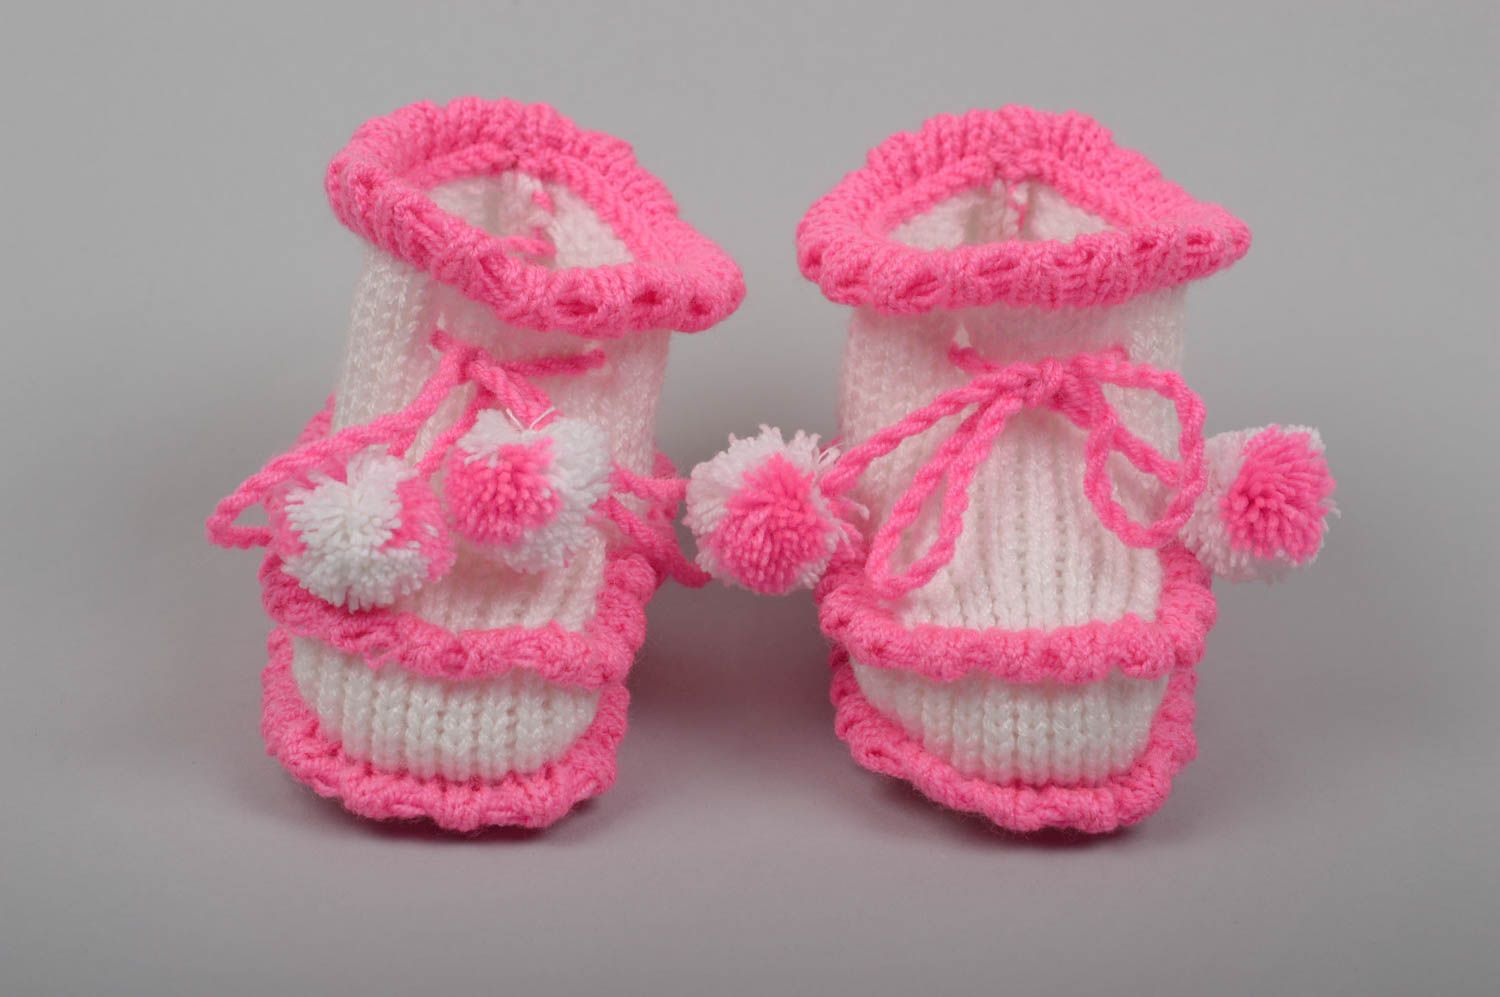 Patucos tejidos artesanales regalos originales zapatos de bebé blanquirosados foto 3